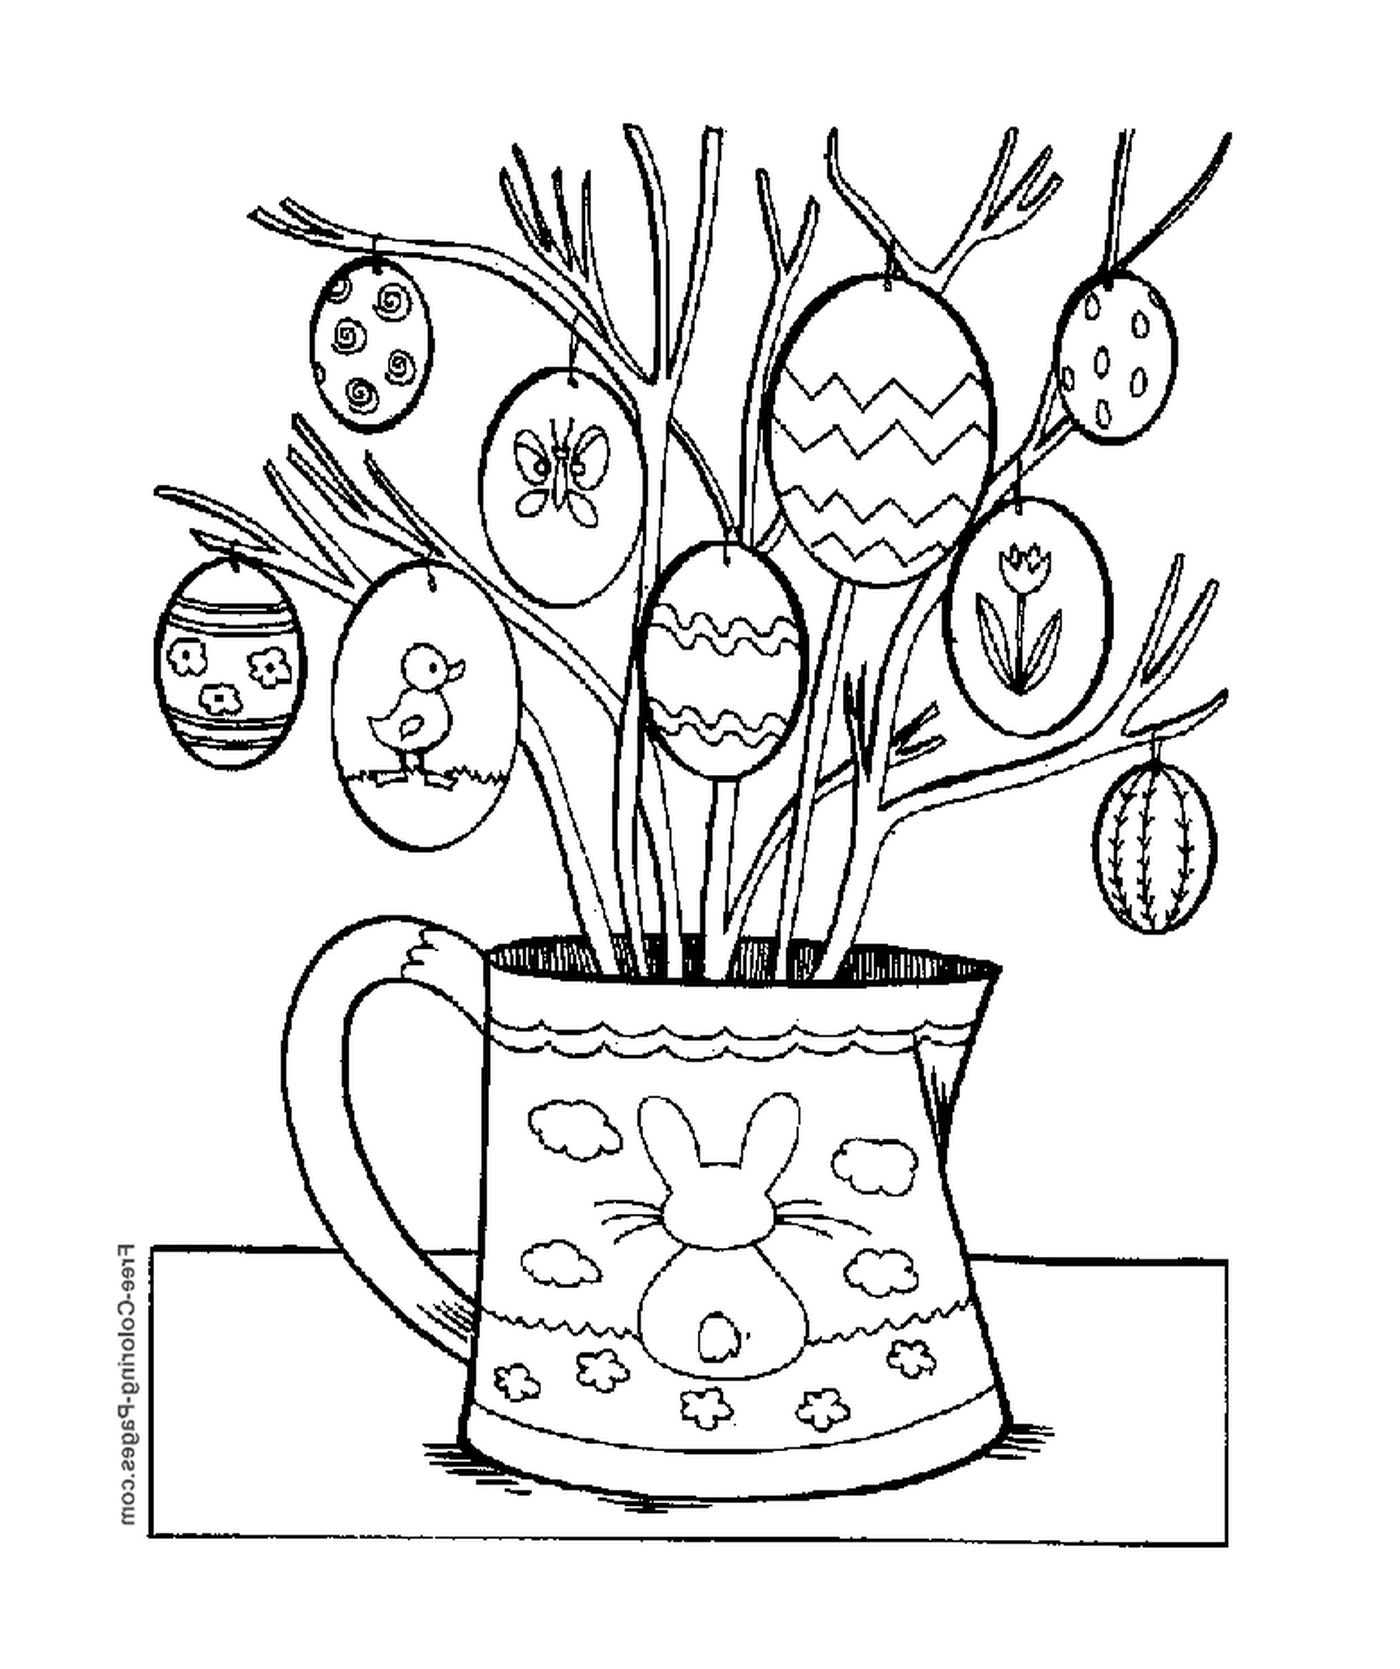  Un jarrón lleno de ramas y huevos 